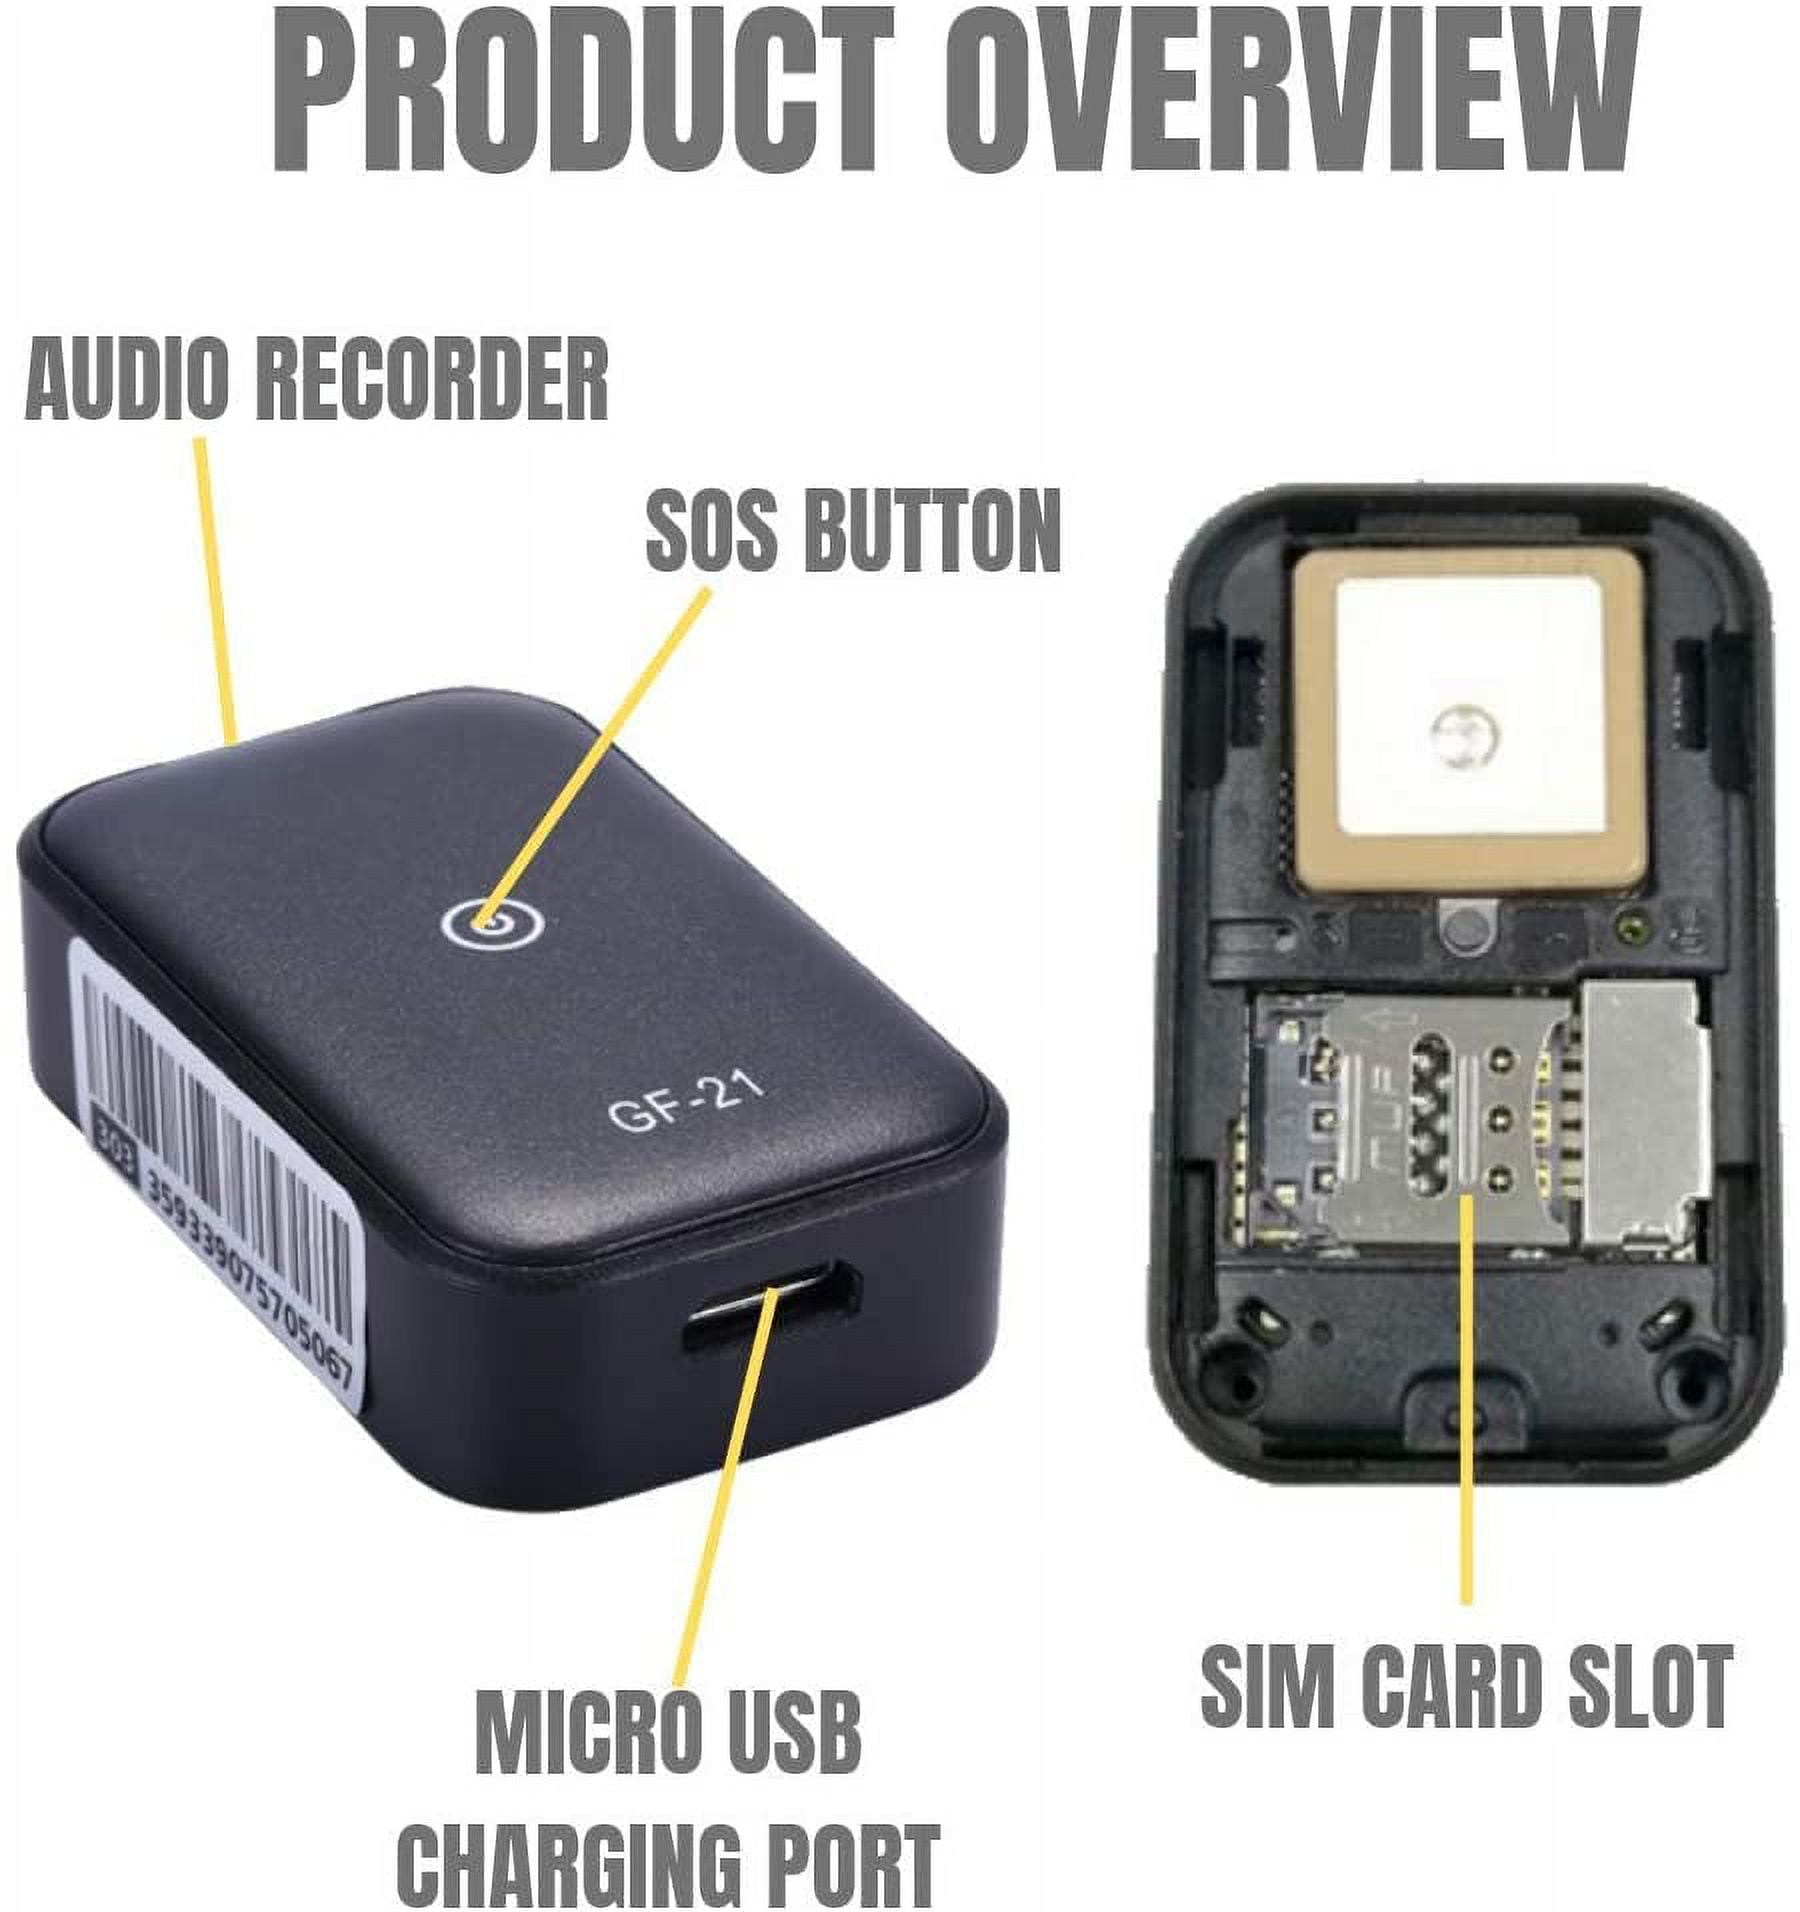 GF-21 Localizador GPS Antirrobo Magnético Mini Localizador GPS Tracker GSM  GPRS Dispositivo de seguimiento en tiempo real Dispositivo antirrobo para  ancianos y niños Zhivalor 2035468